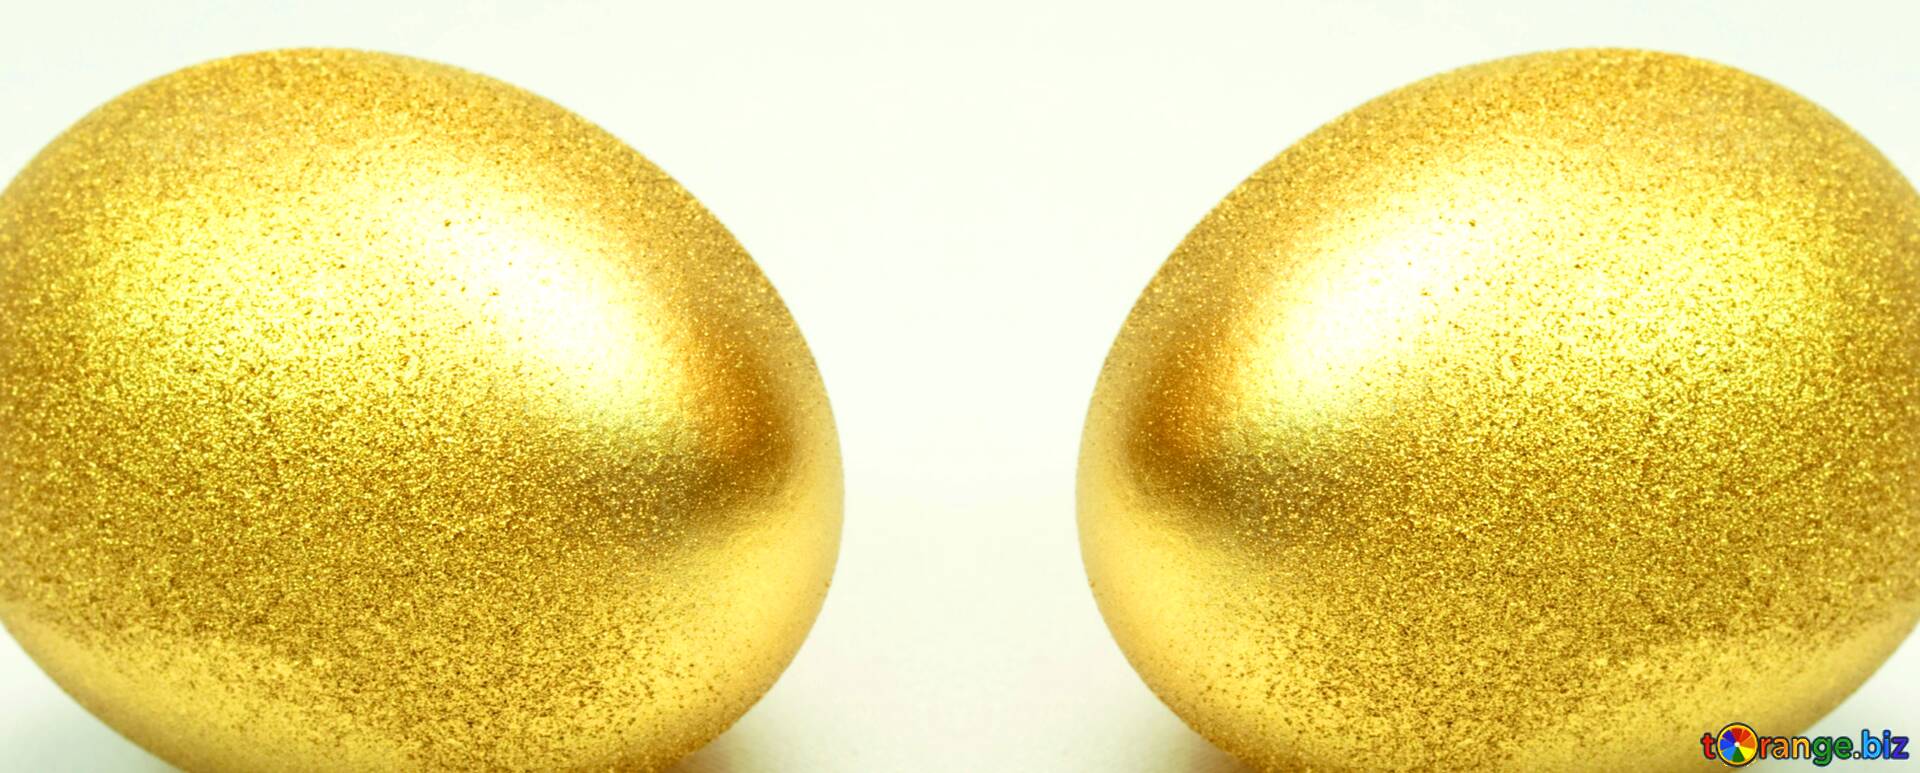 Найдите золотое яйцо. Золотое яйцо. 2 Золотых яйца. Яйцо золото. Золотого цвета яйца.